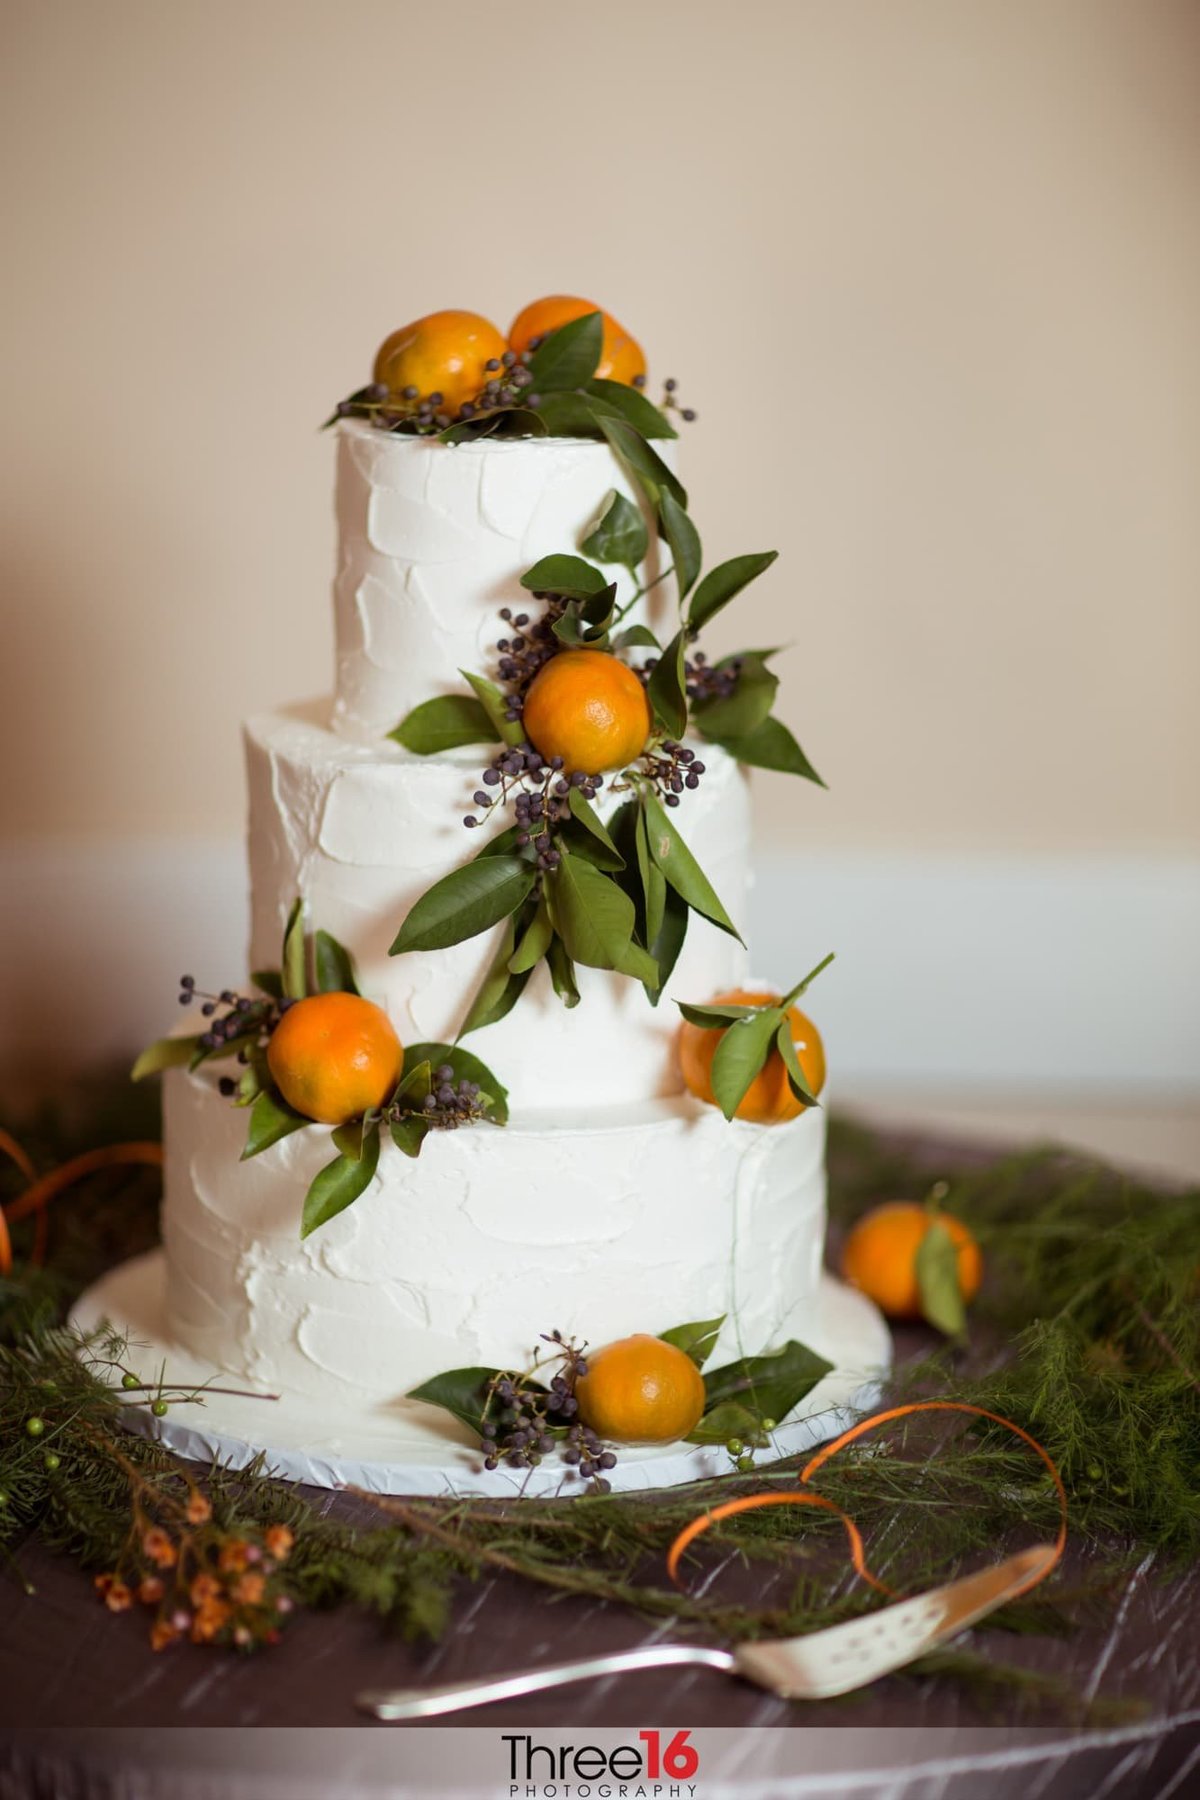 Beautiful wedding cake with oranges on it